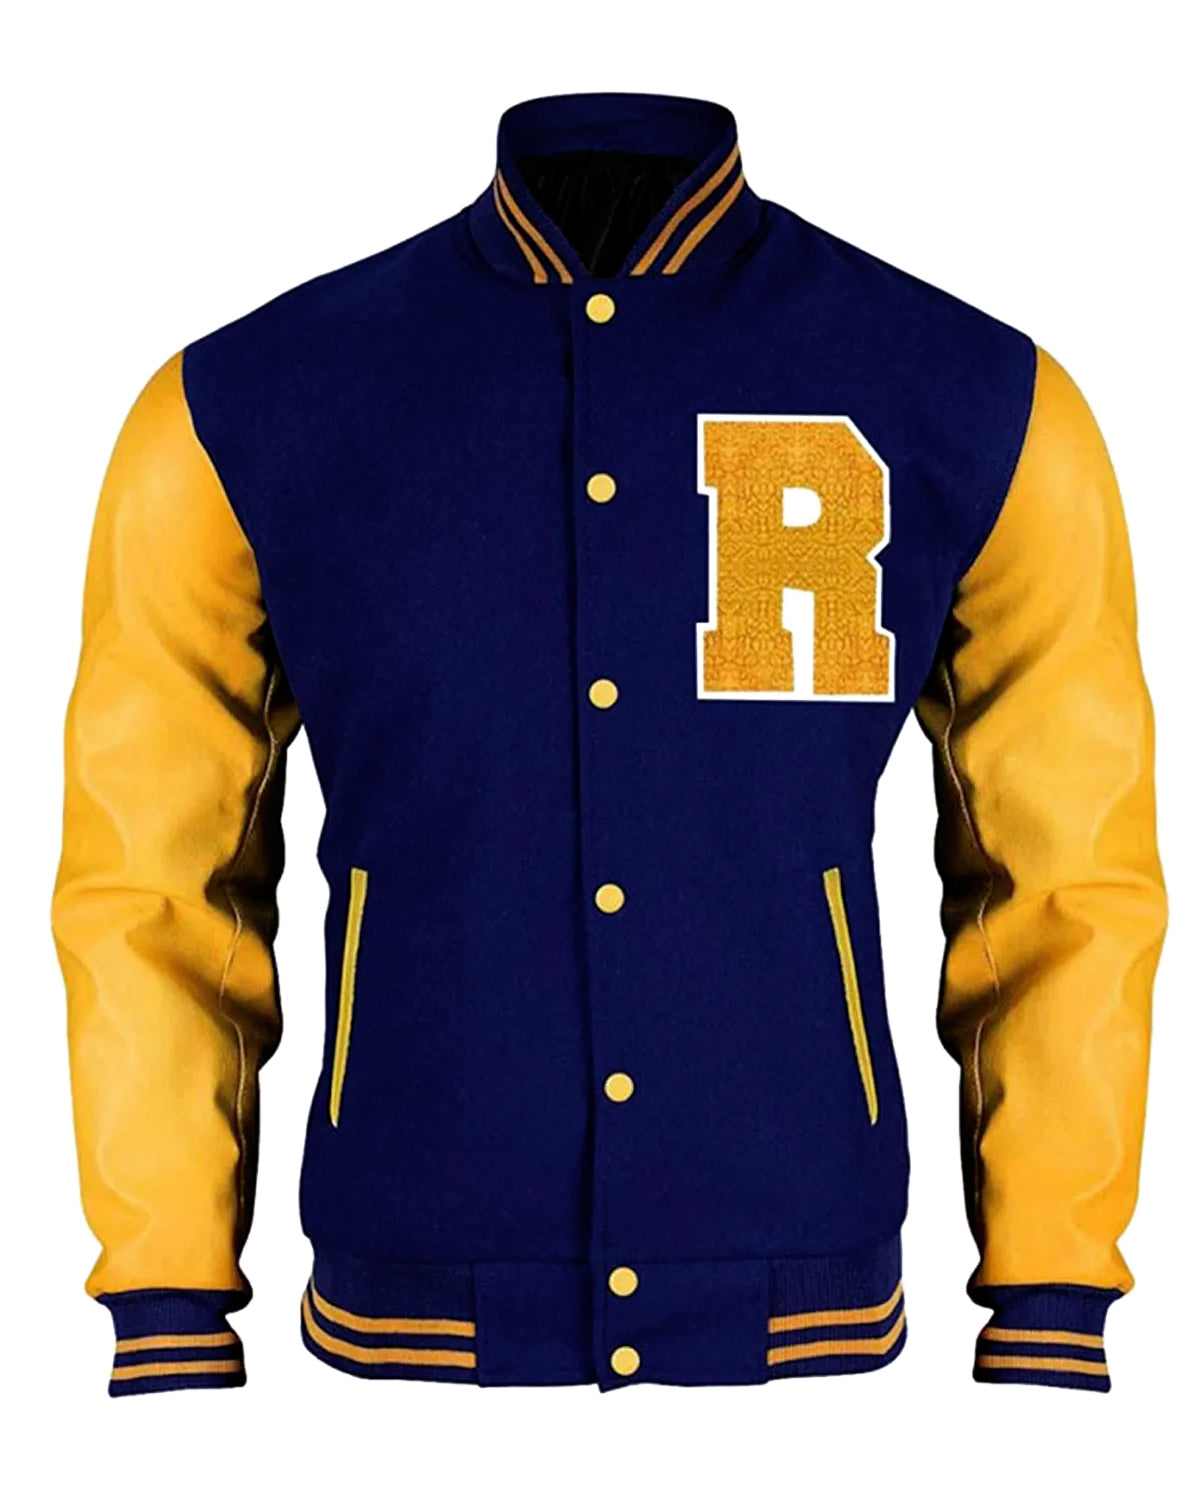 KJ Apa Riverdale R Letterman Varsity Jacket